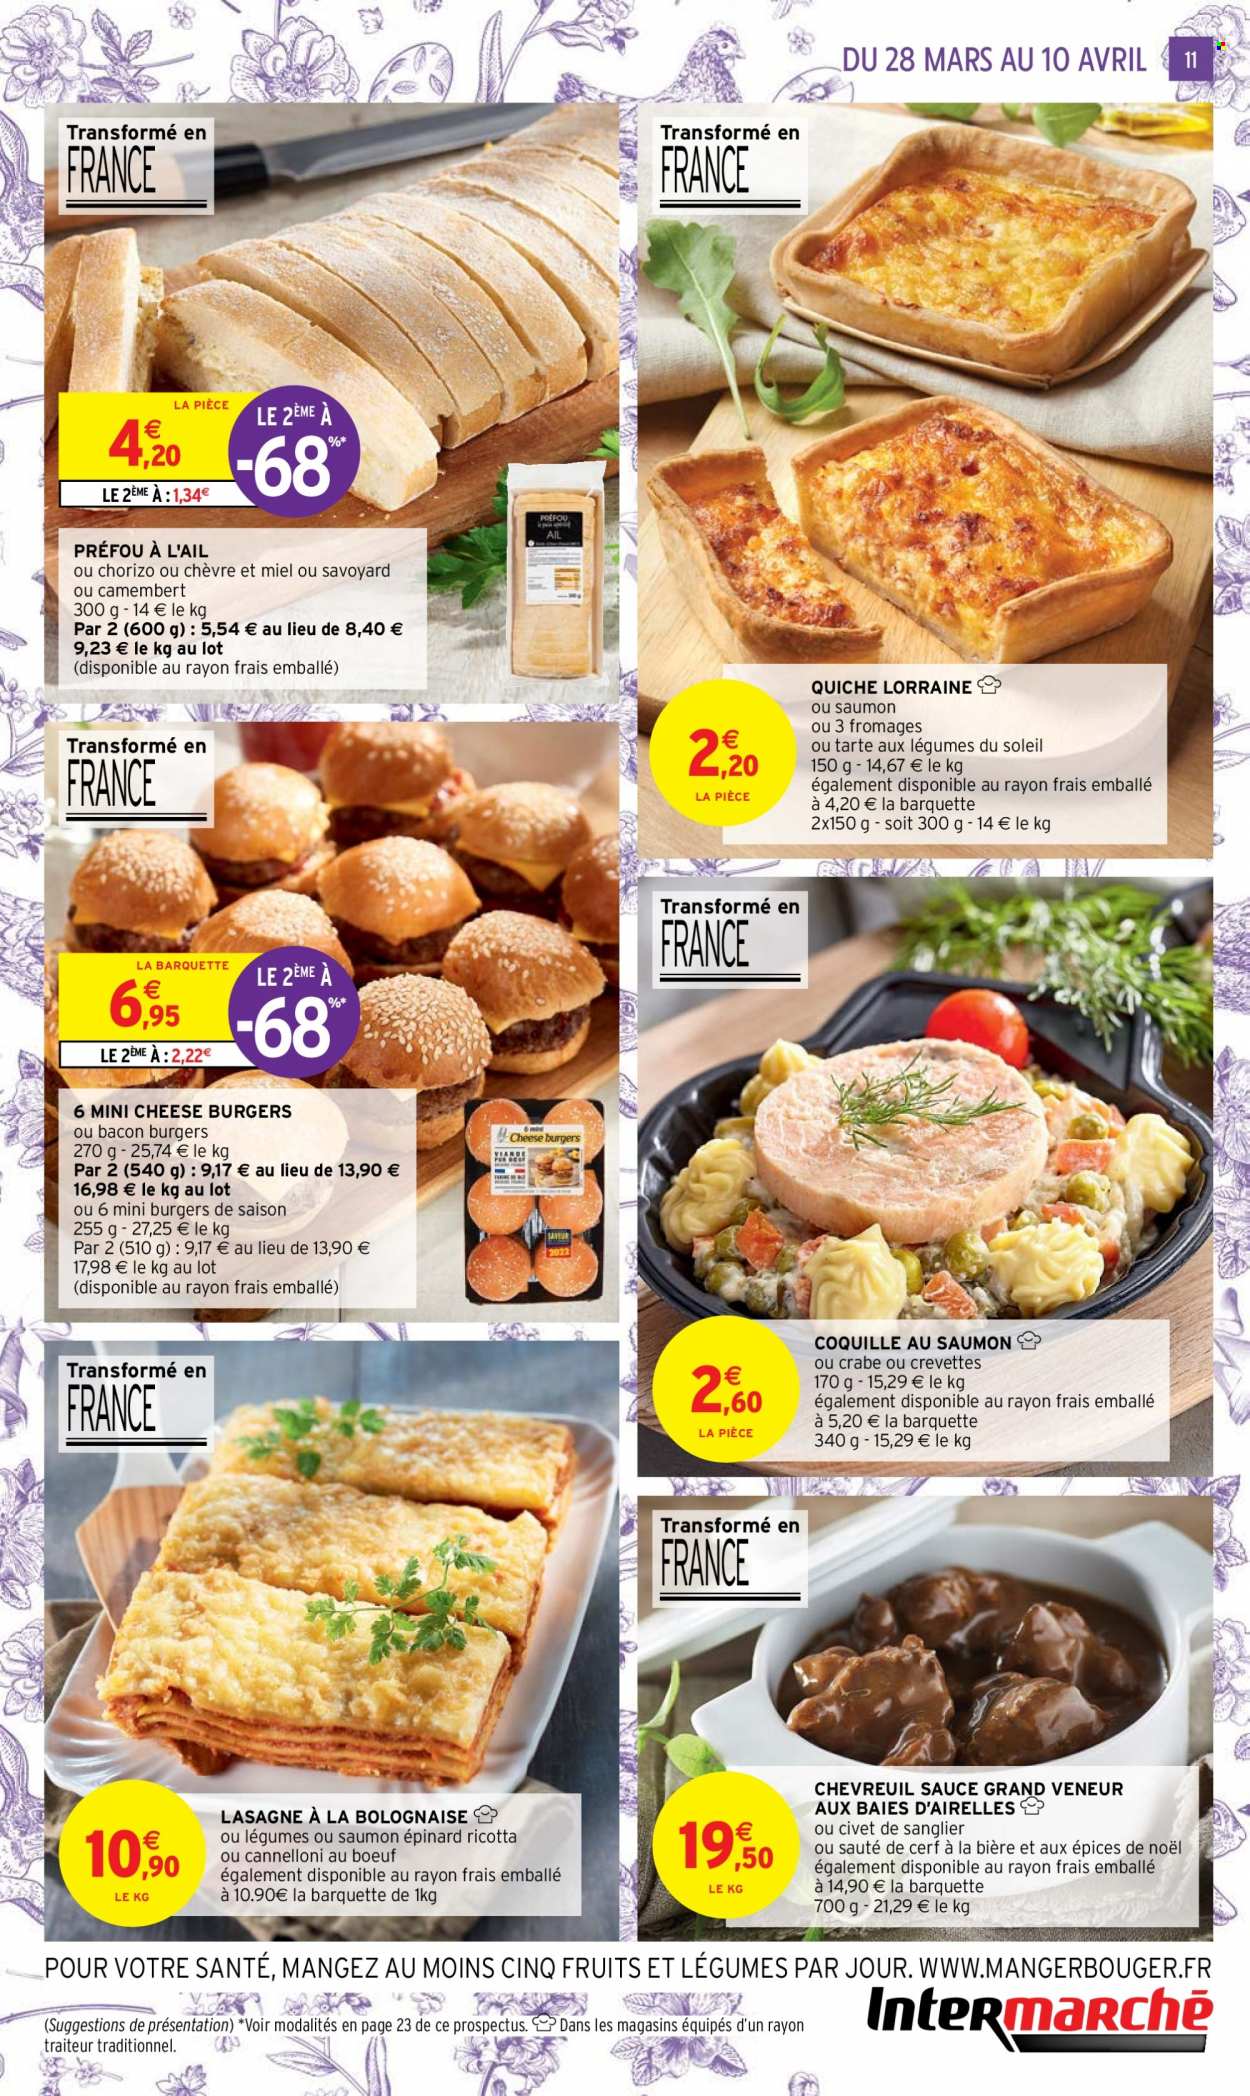 thumbnail - Catalogue Intermarché Super - 28/03/2023 - 10/04/2023 - Produits soldés - viande, tarte, quiche, viande de sanglier, viande de chevreuil, crabe, lasagne à la bolognaise, lasagnes, préfou, bacon, camembert. Page 11.